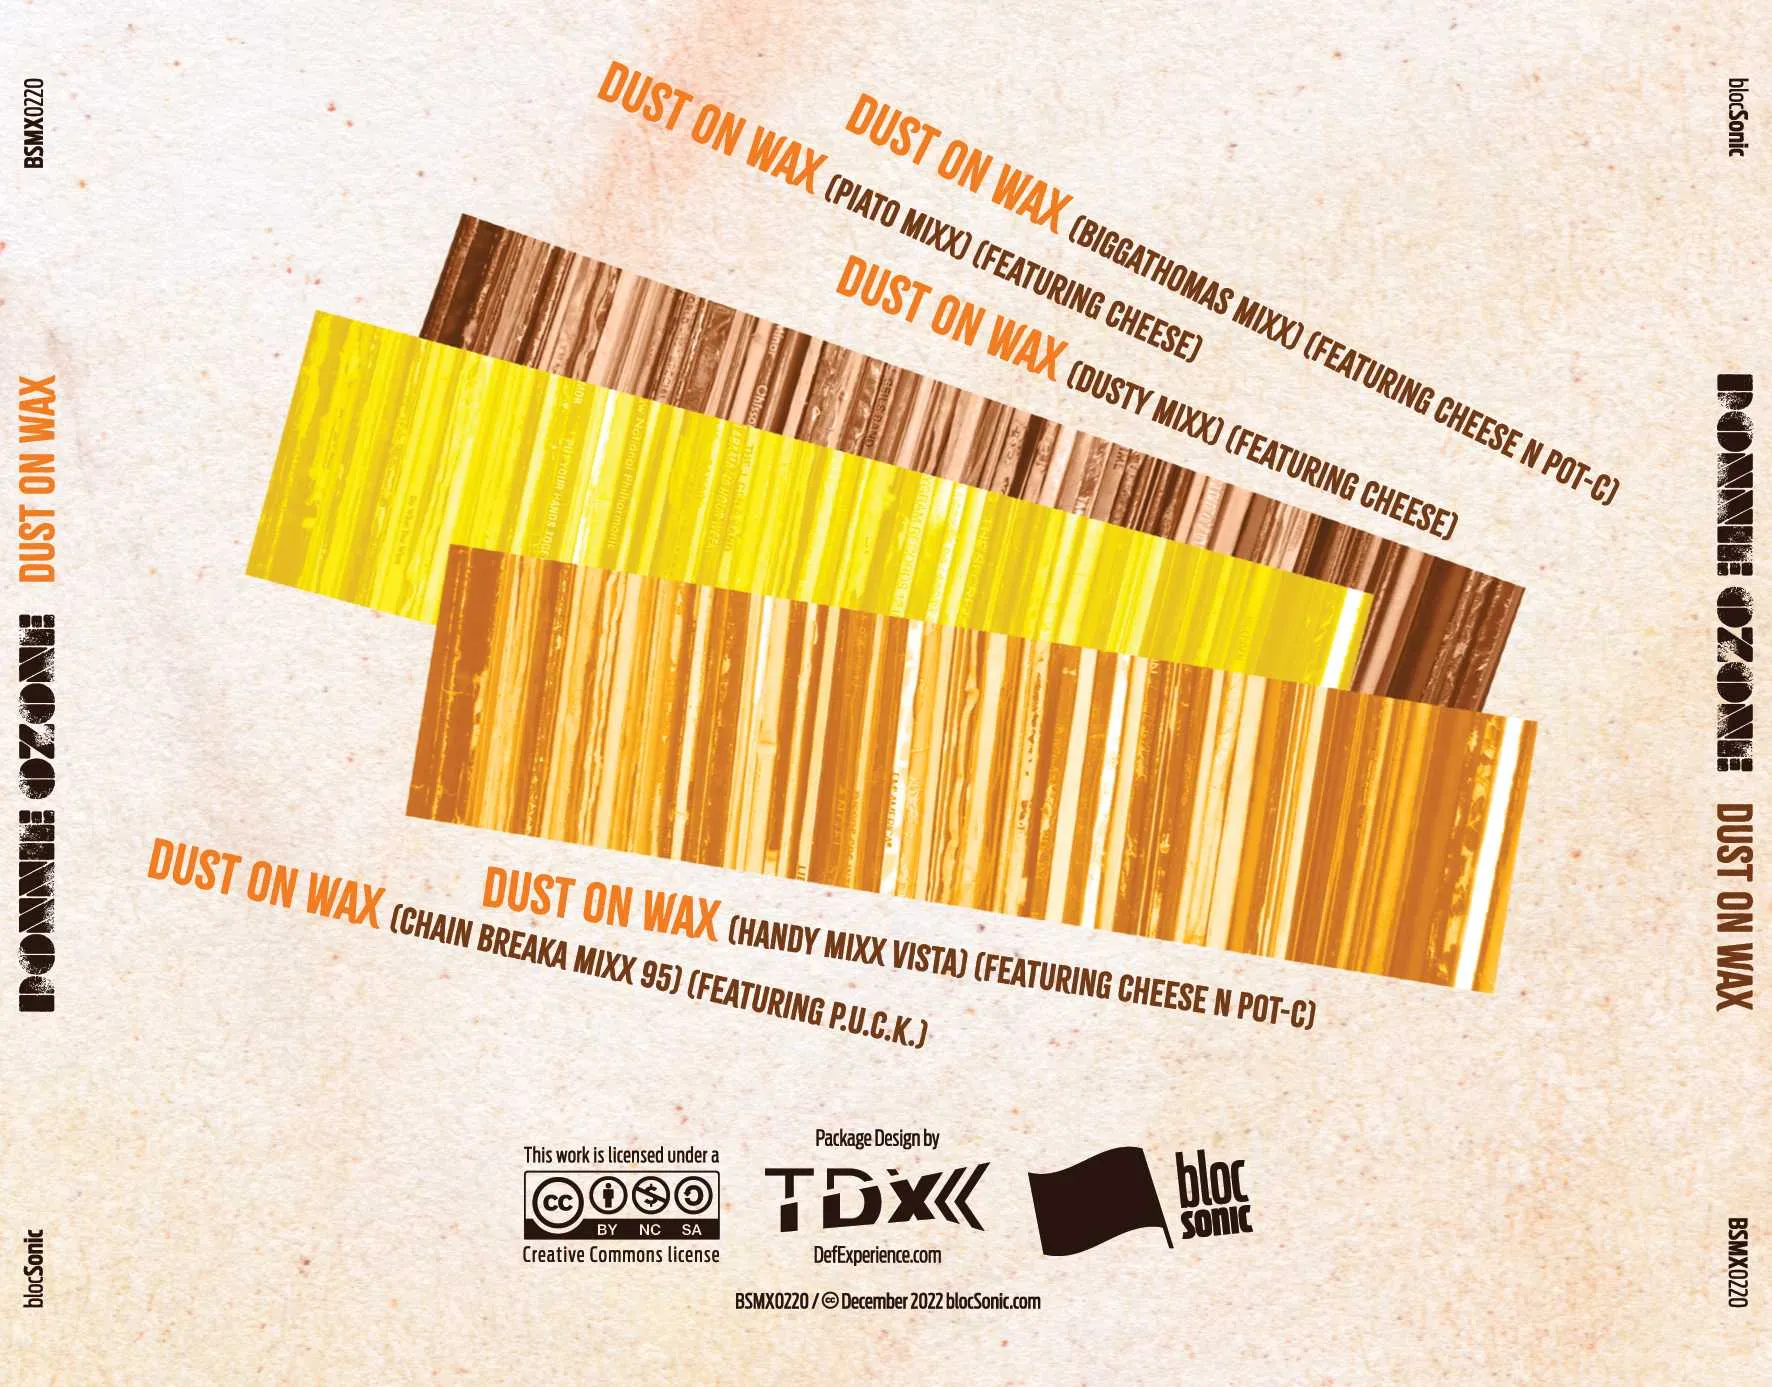 Album traycard for “Dust On Wax” by Donnie Ozone